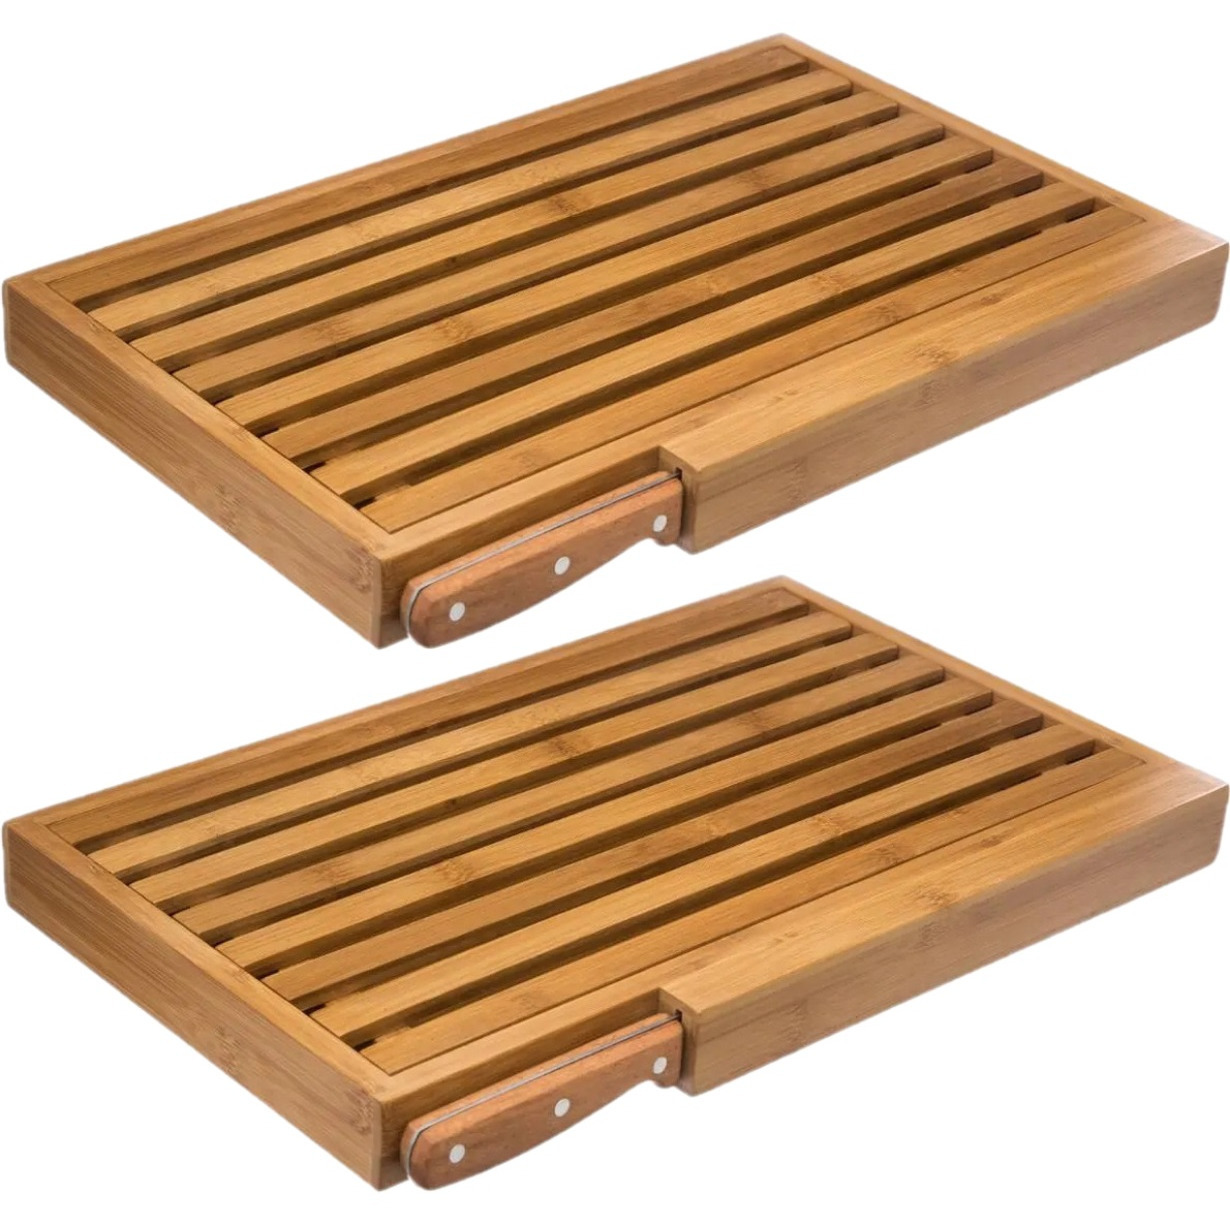 2x Stuks brood snijplank met kruimel opvangbak 44 x 27 cm van bamboe hout inclusief broodmes